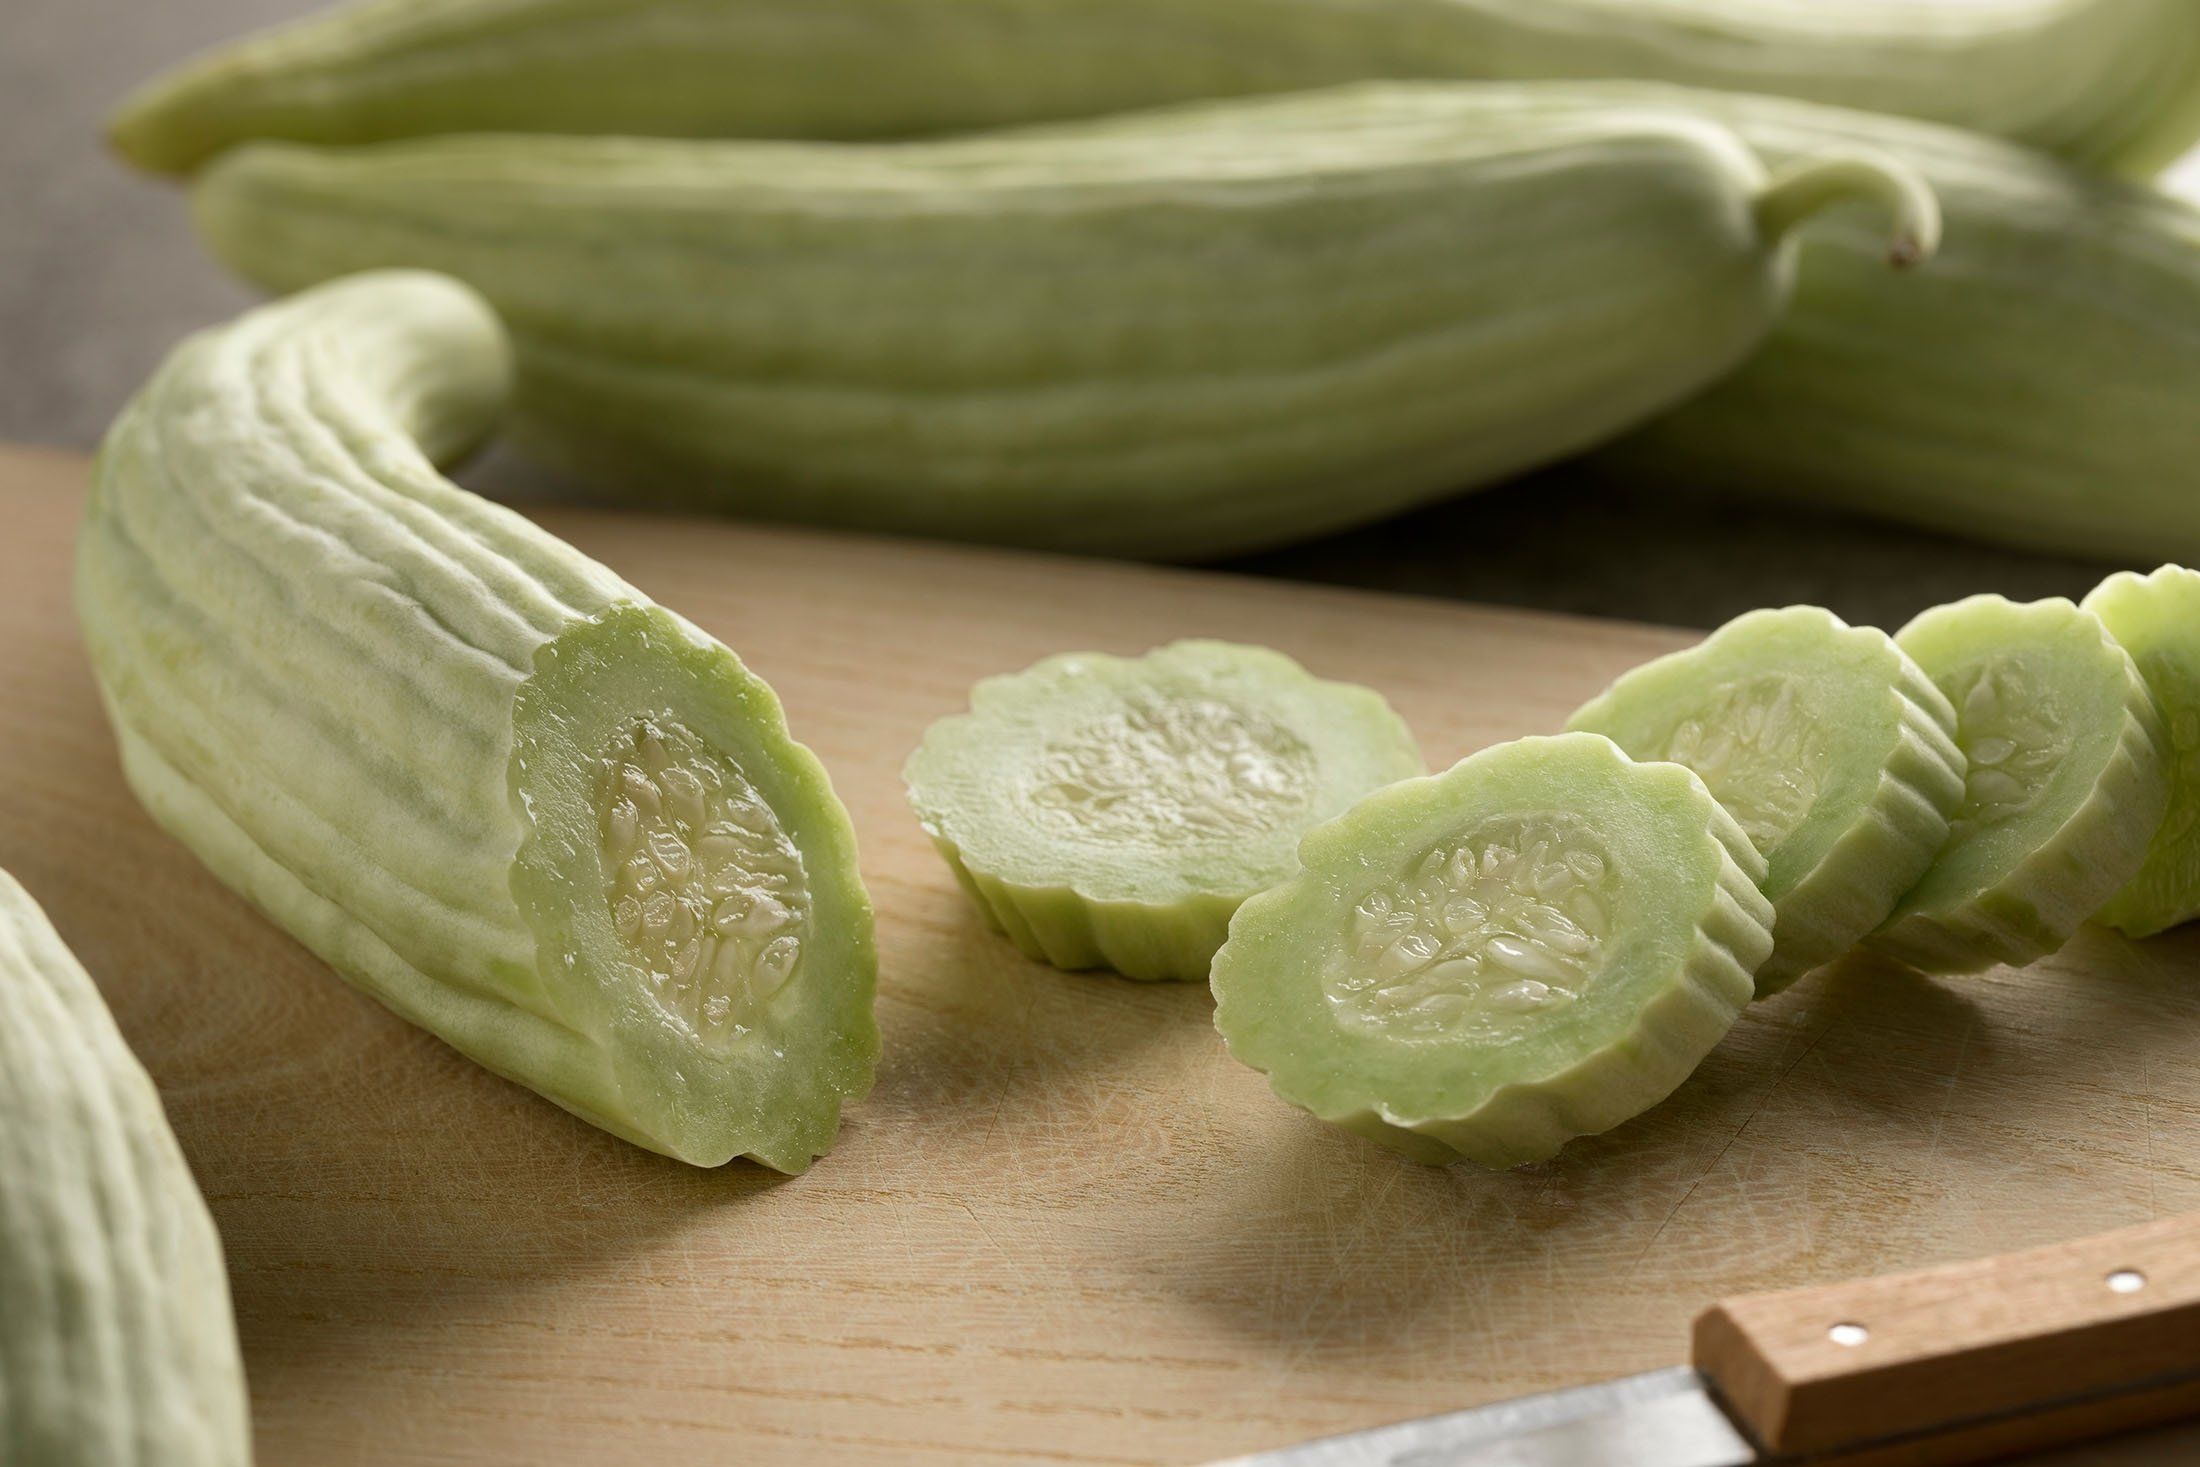 Varietas muskmelon yang disebut acur adalah buah yang menyerupai mentimun yang dibesar-besarkan karena panjang dan hijau dengan tekstur bagian dalam yang mirip, namun kulit luarnya memiliki tonjolan yang menonjol.  (Foto Shutterstock)